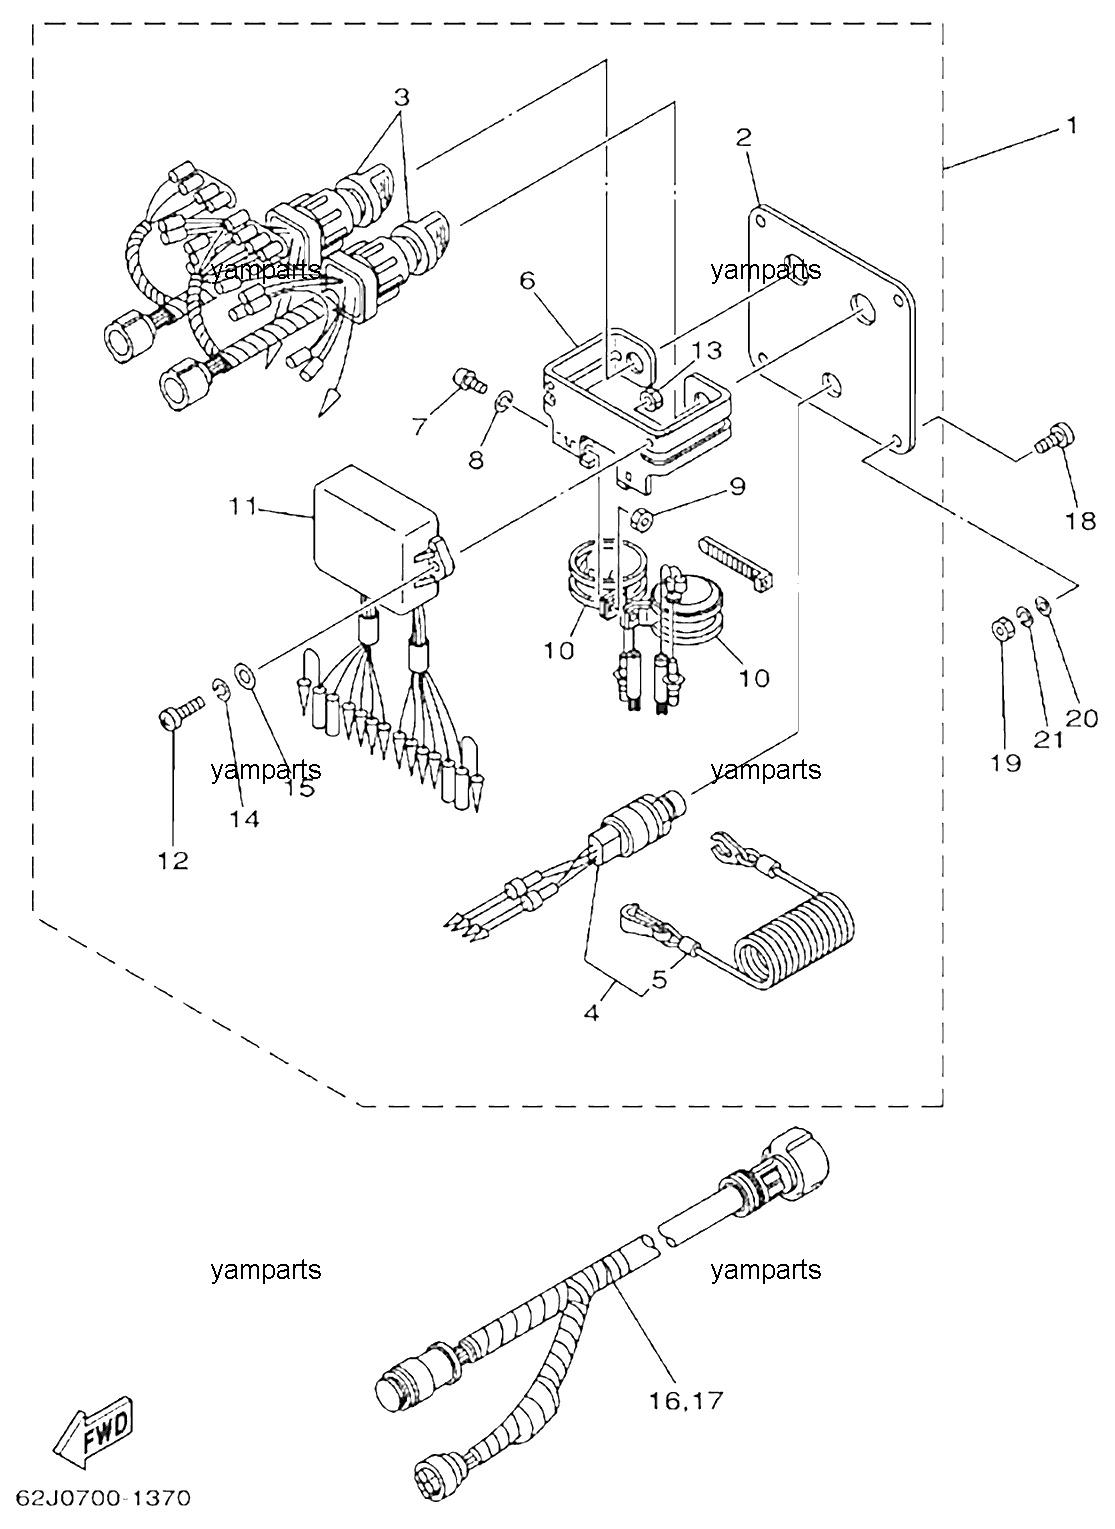 Панель с замками зажигания (спарка), схема 2